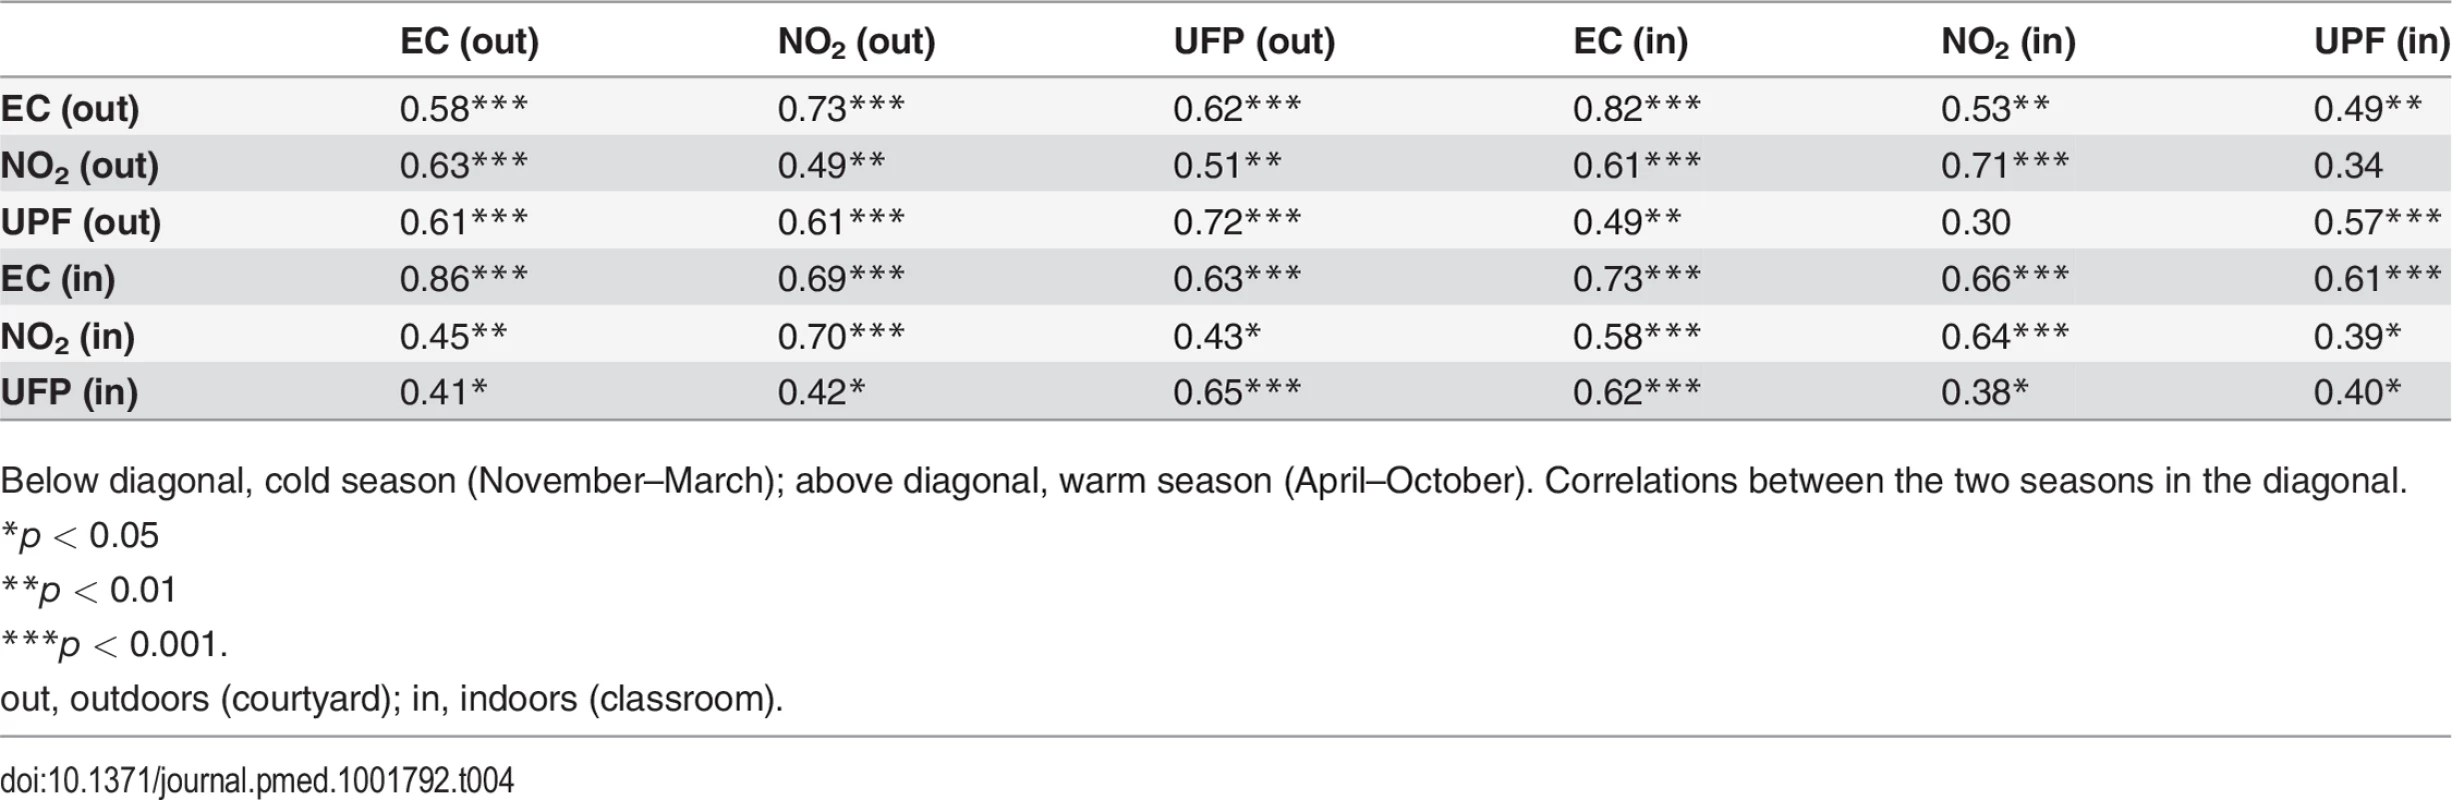 Correlation coefficients (Spearman) between air pollutants by season.